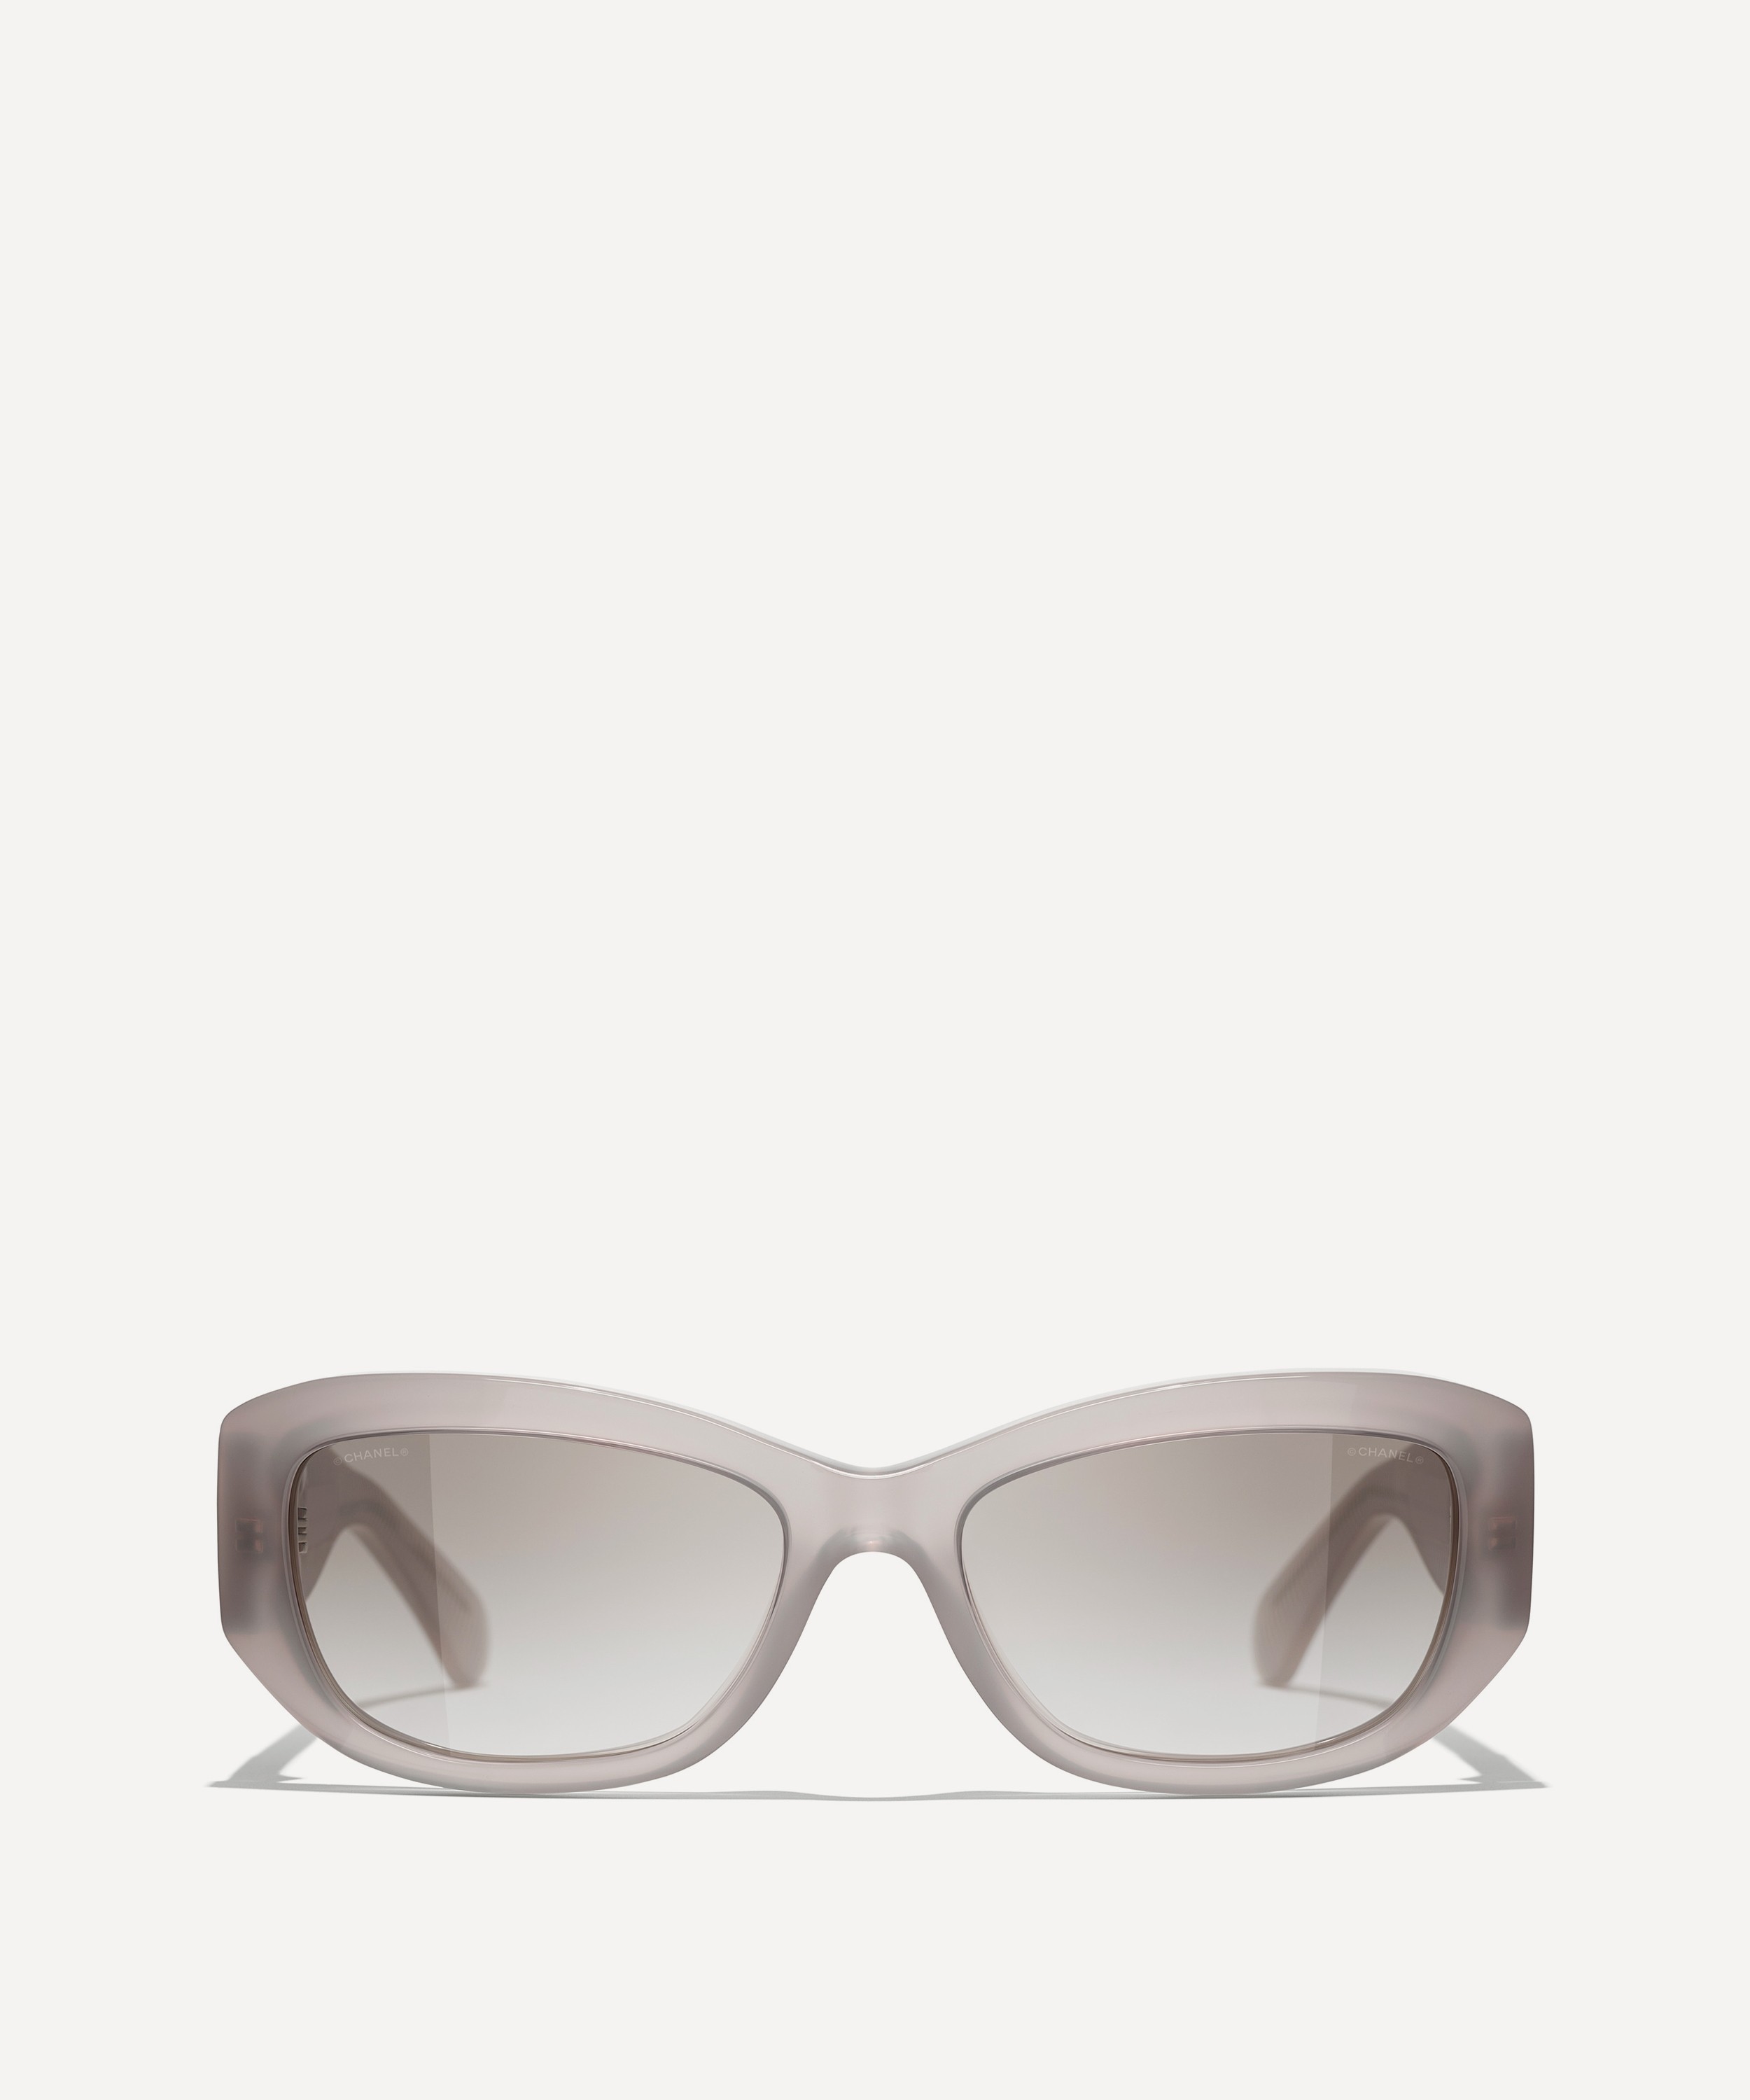 Sunglasses: Rectangle Sunglasses, acetate — Fashion